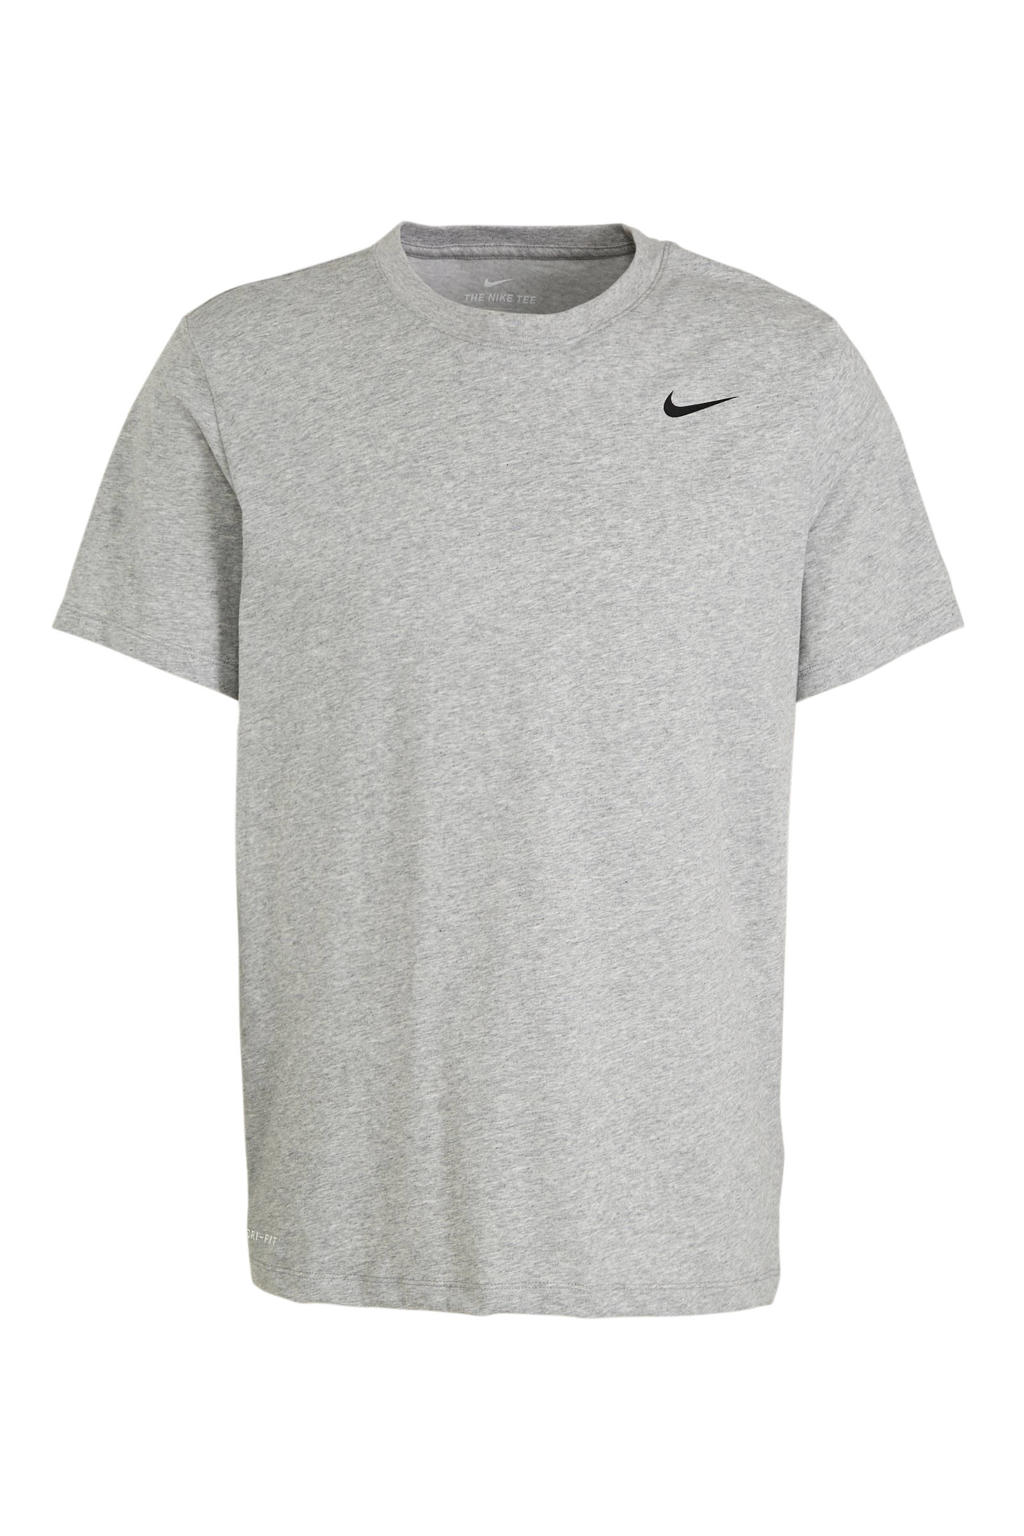 Grijze heren Nike sport T-shirt melange van katoen met logo dessin, korte mouwen en ronde hals